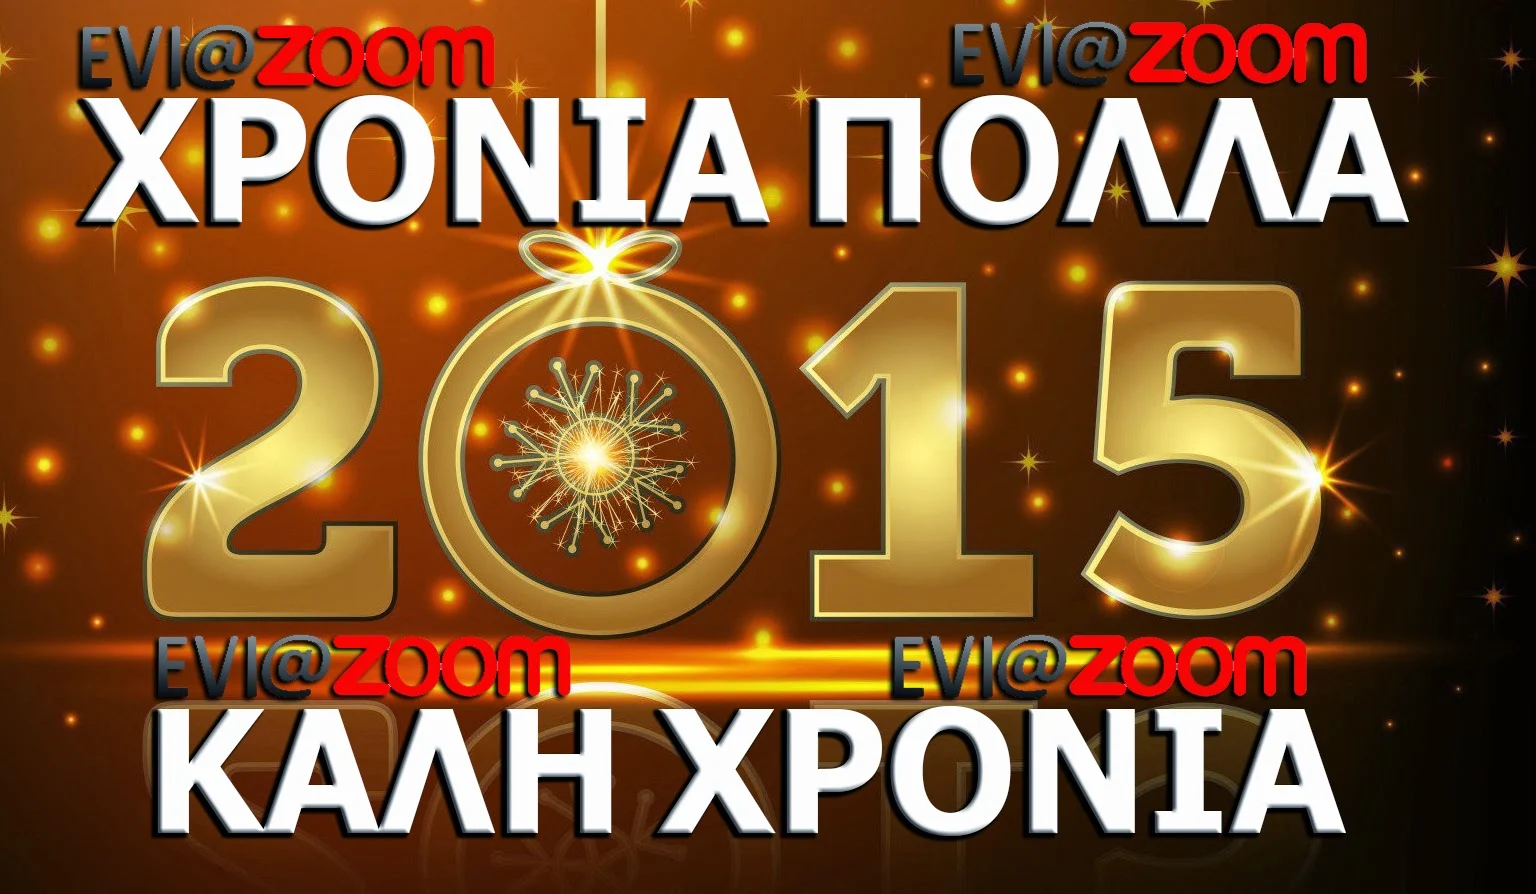 Το Eviazoom.gr εύχεται Χρόνια Πολλά, Καλή Χρονιά - Ευτυχισμένο το 2015!